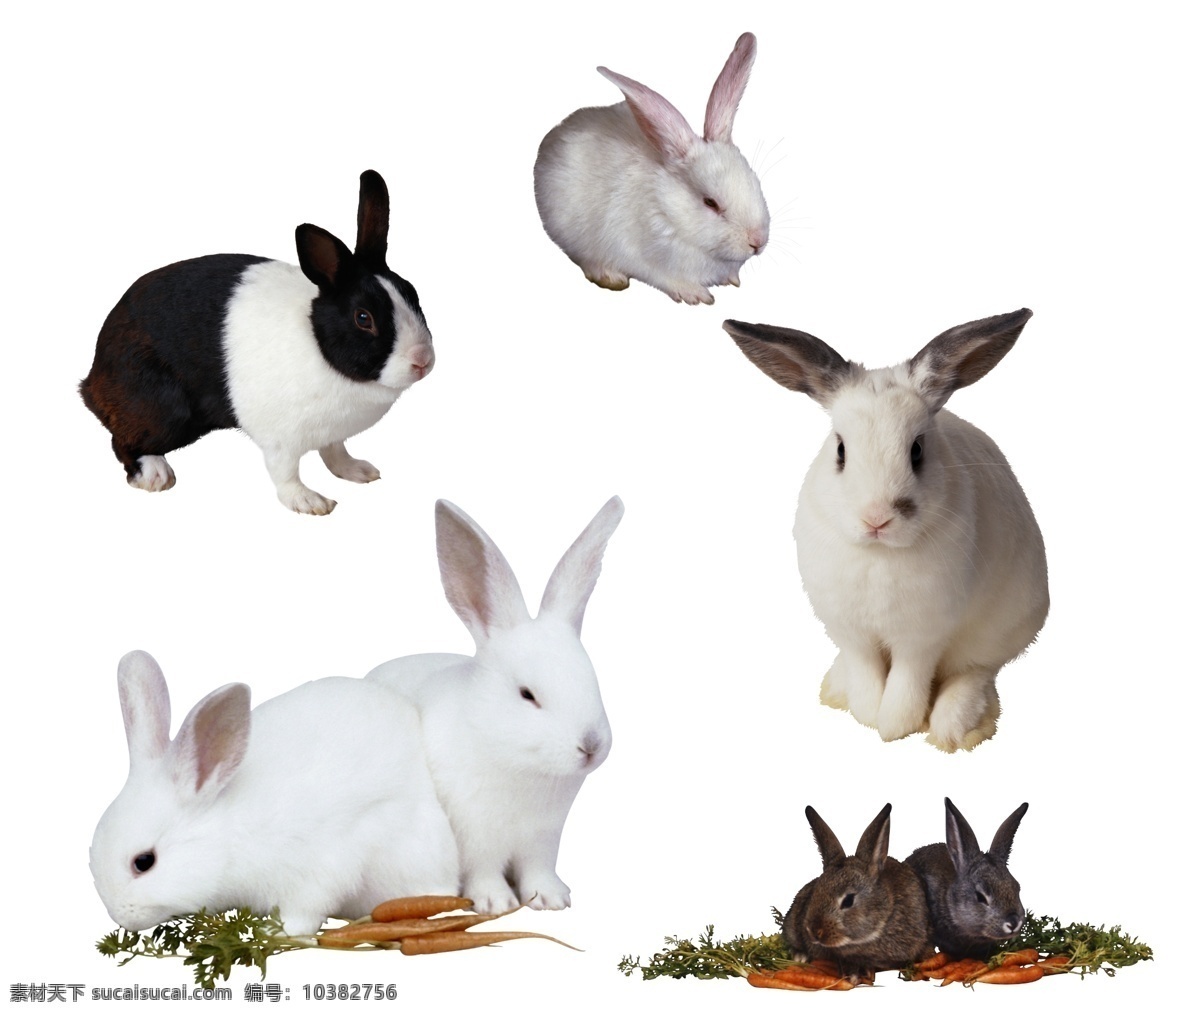 宠物 宠物兔子 萌兔 可爱兔子 兔子素材 兔子图片 兔子集合 兔子大全 兔子集锦 家兔 灰兔 白兔